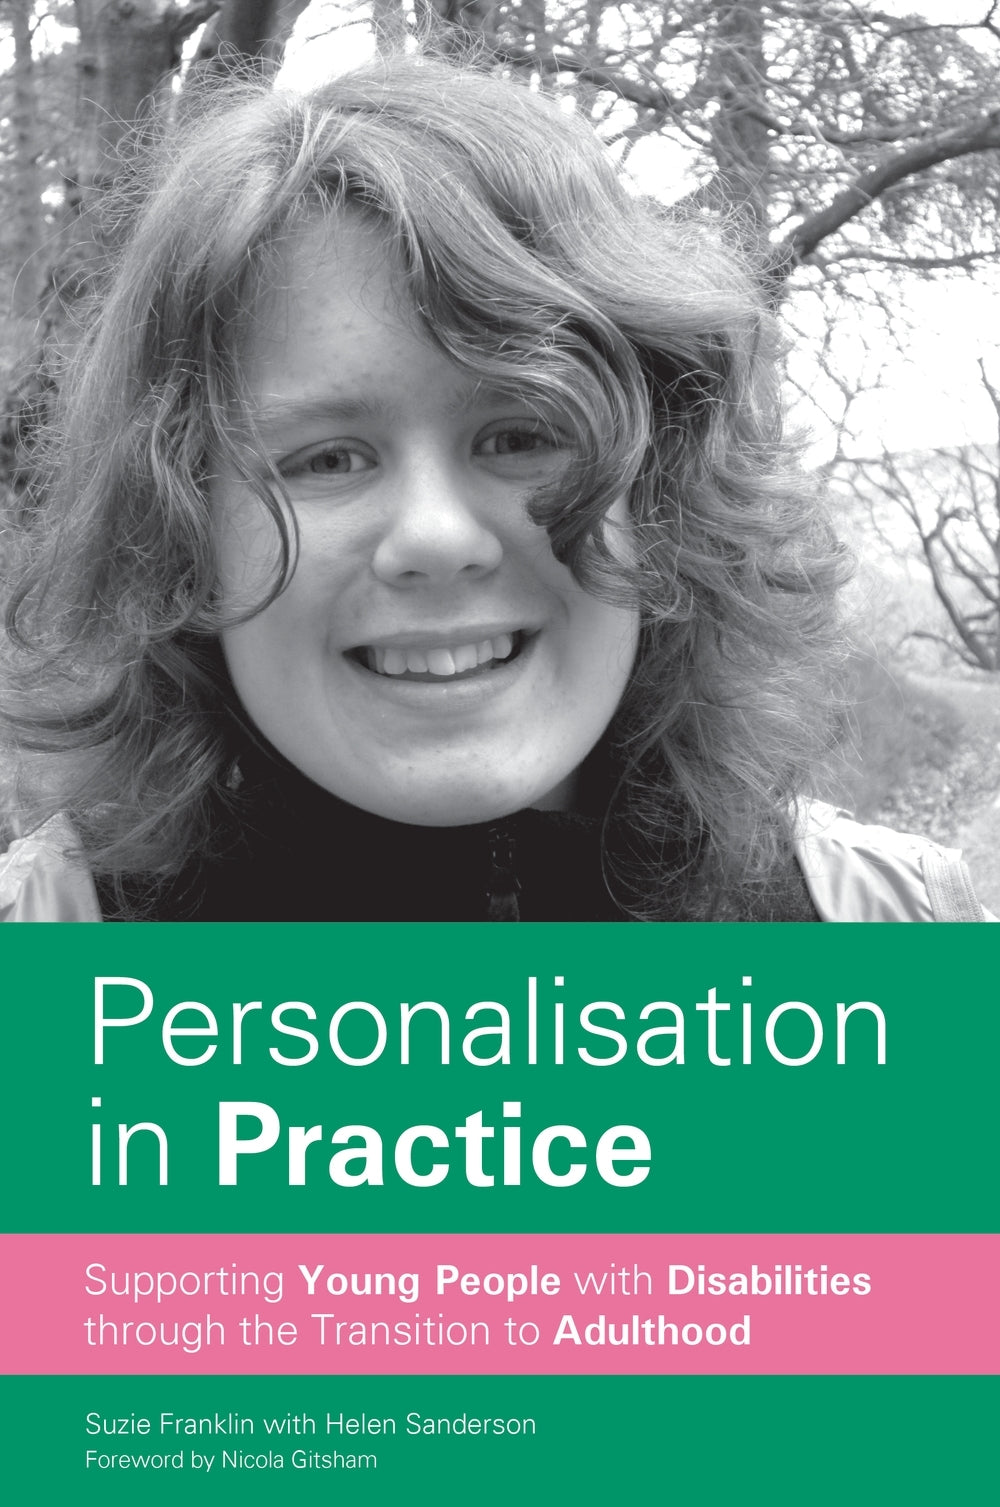 Personalisation in Practice by Helen Sanderson, Suzie Franklin, Nicola Gitsham